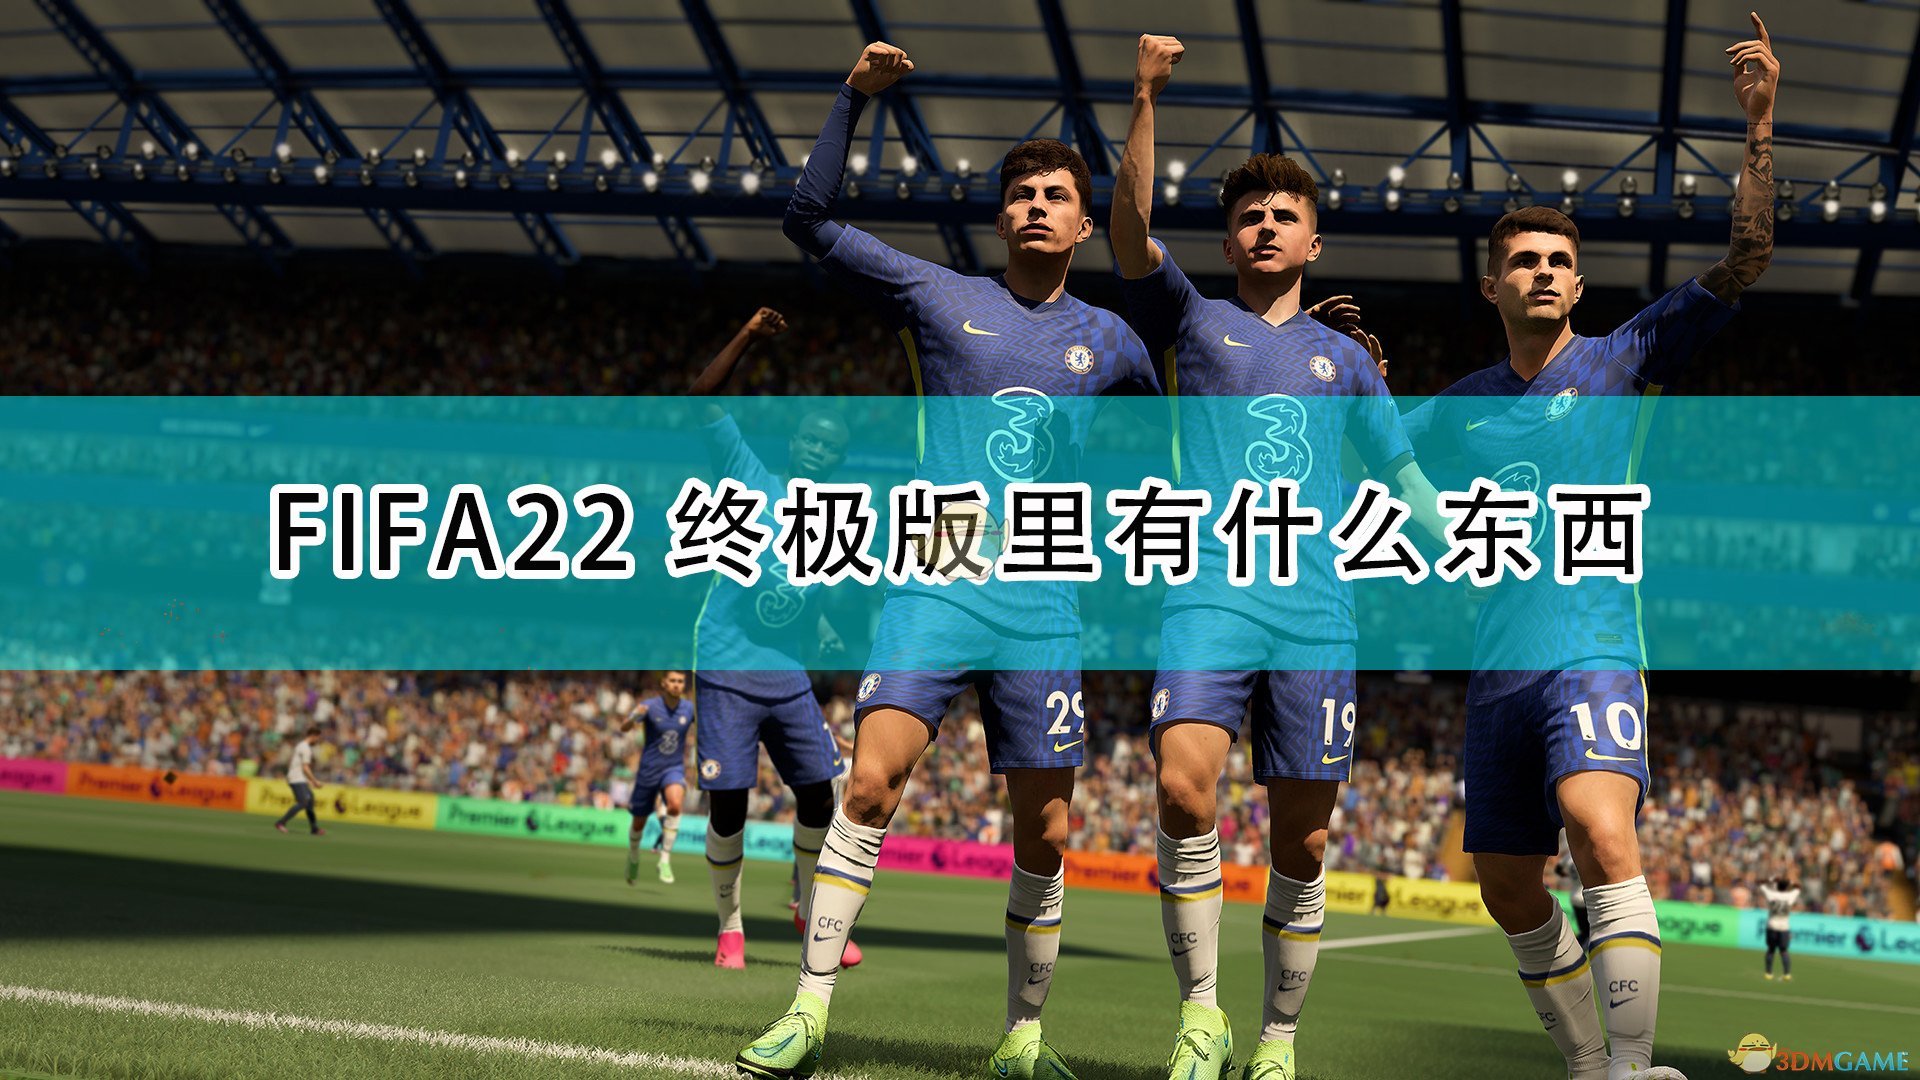 《FIFA 22》终极版及限时奖励内容介绍